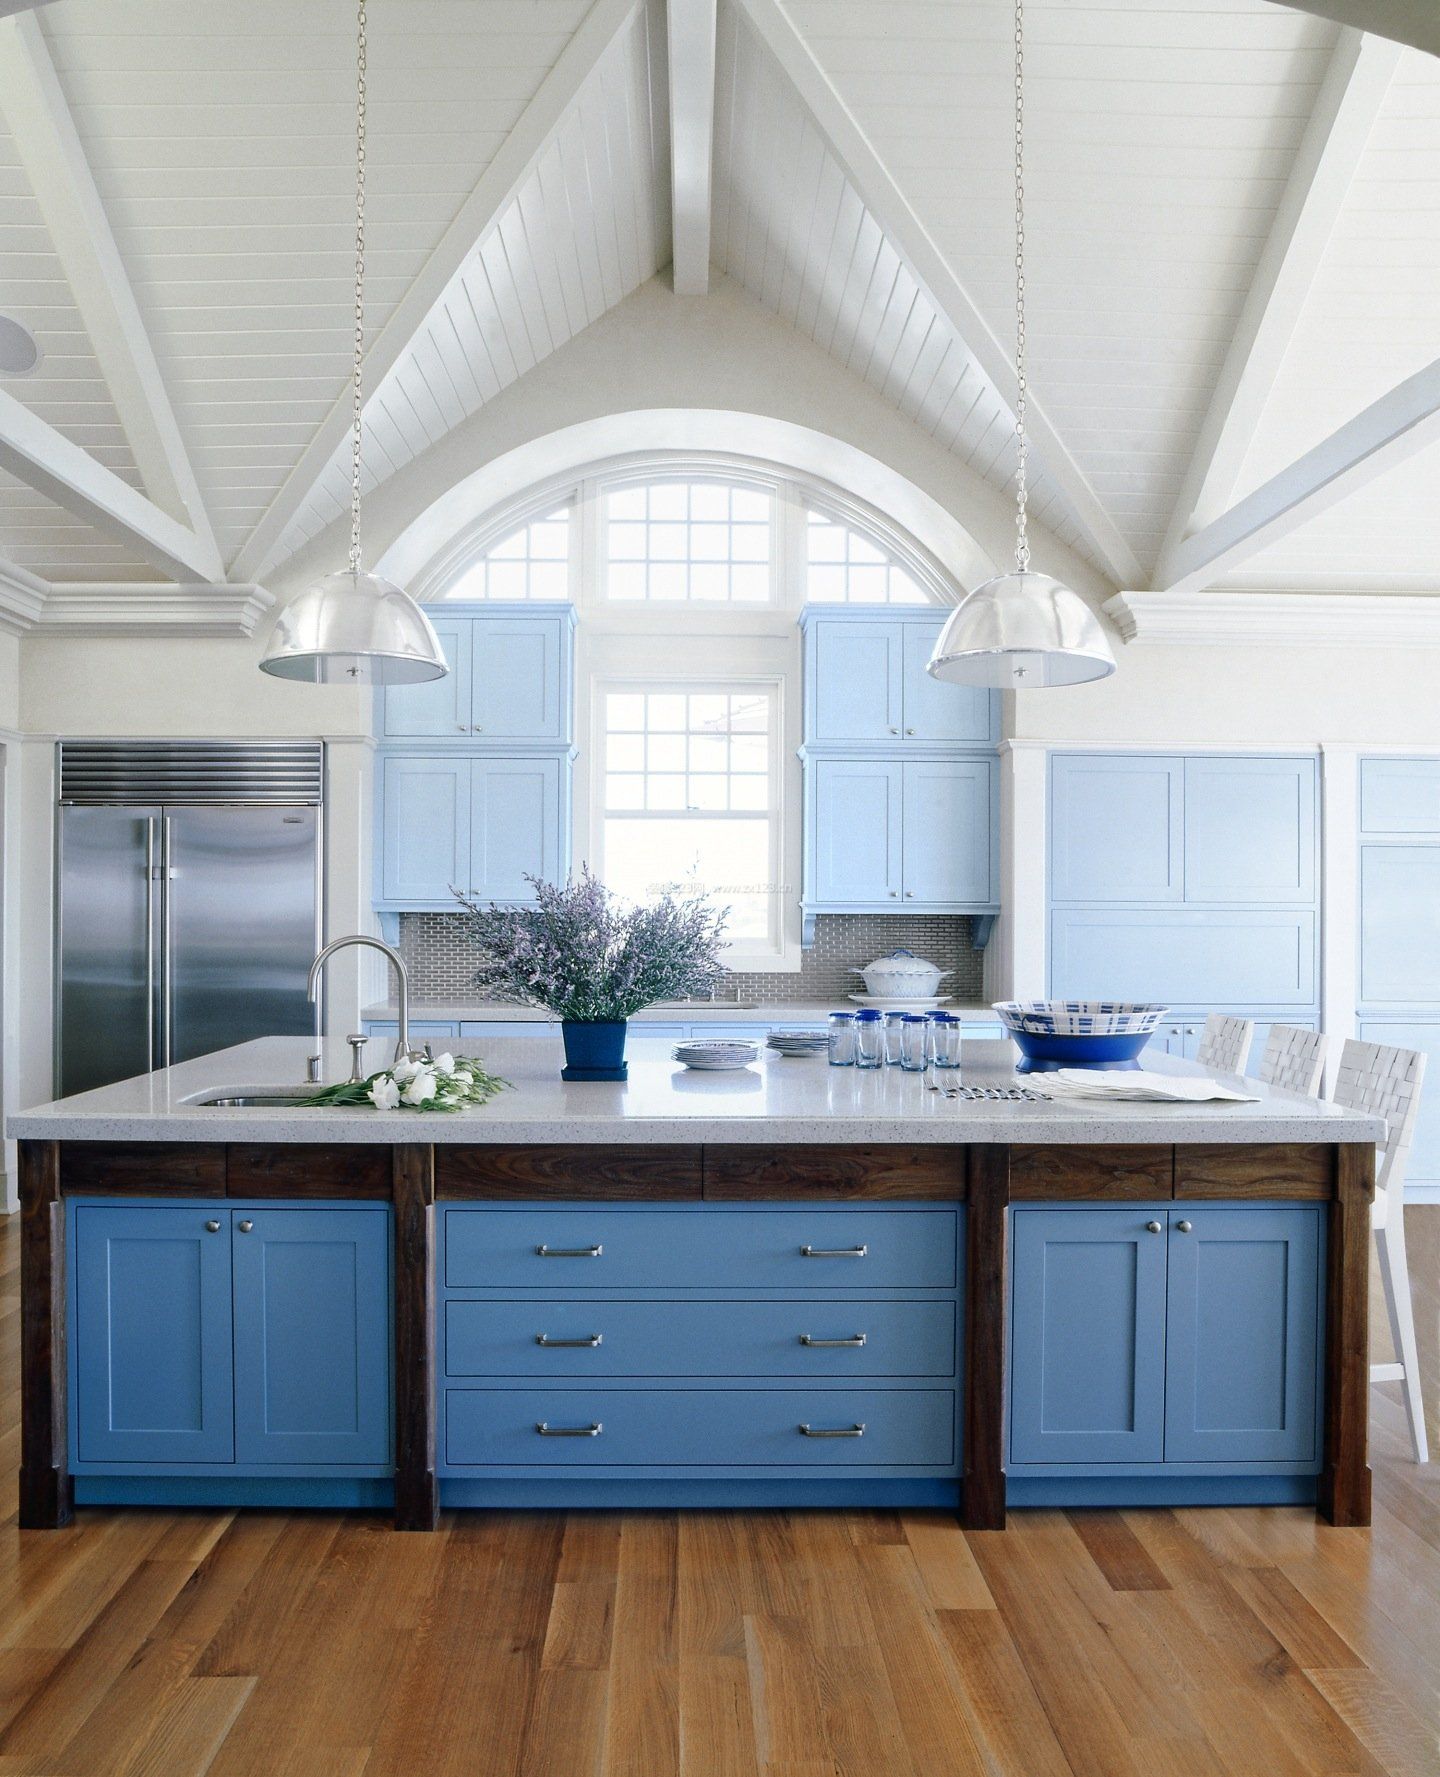 美式现代简约风格厨房橱柜颜色搭配